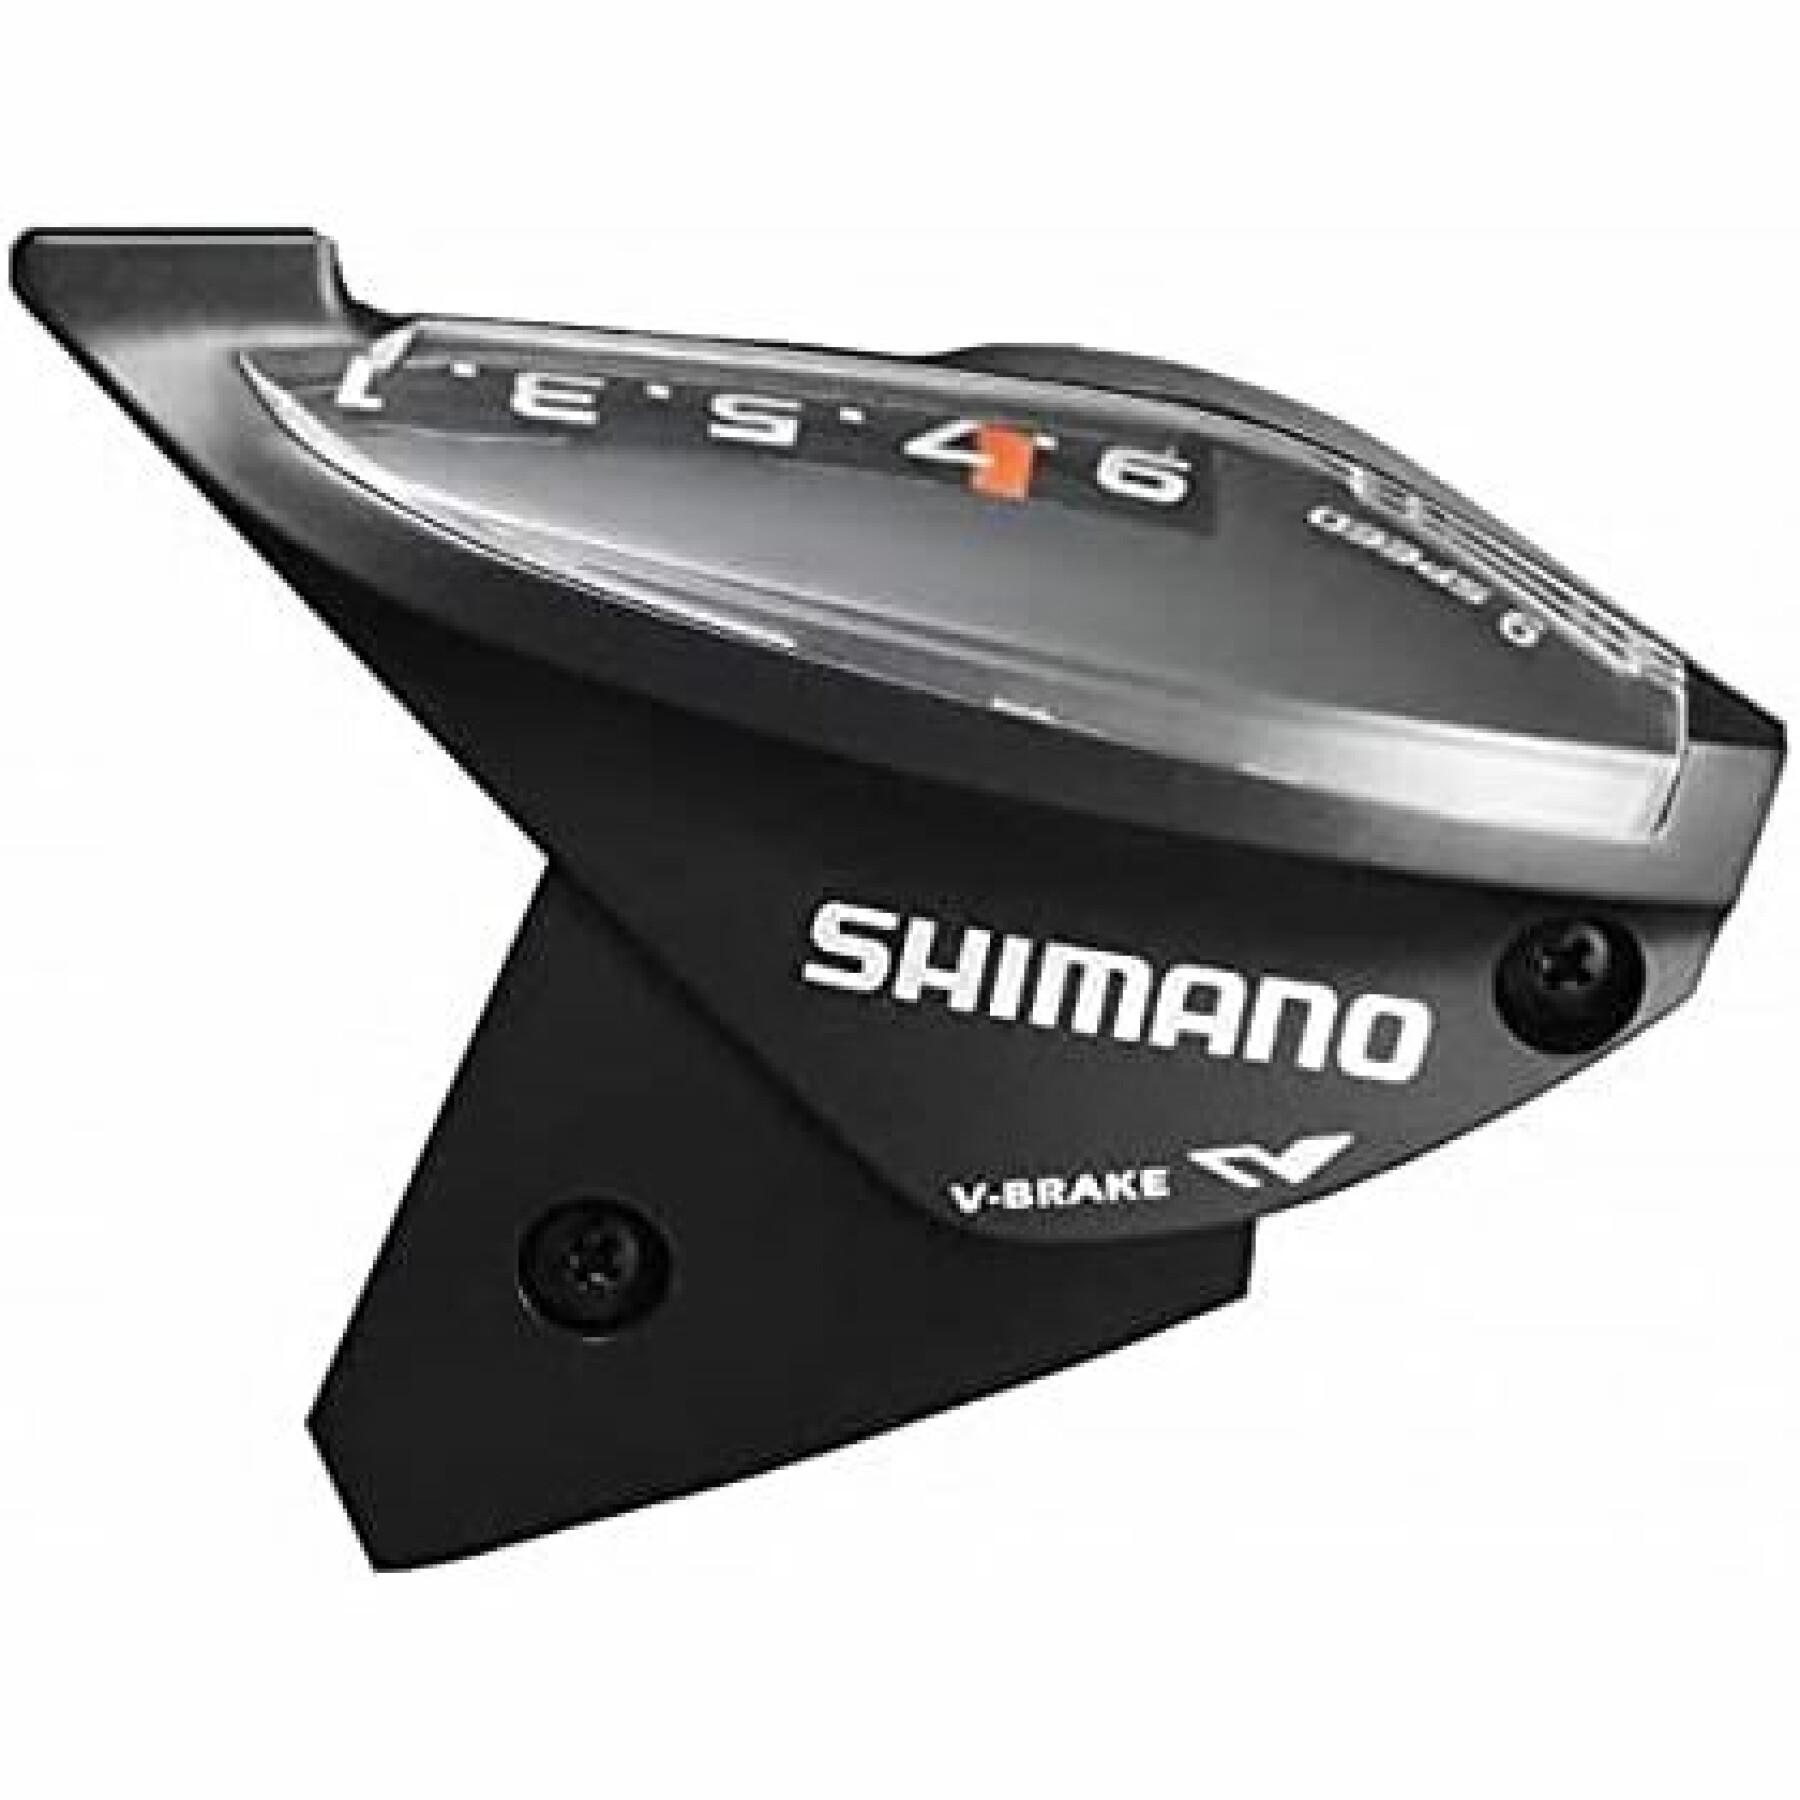 Tampa superior e parafusos de fixação (m3 x 5) Shimano ST-EF510-9R2A